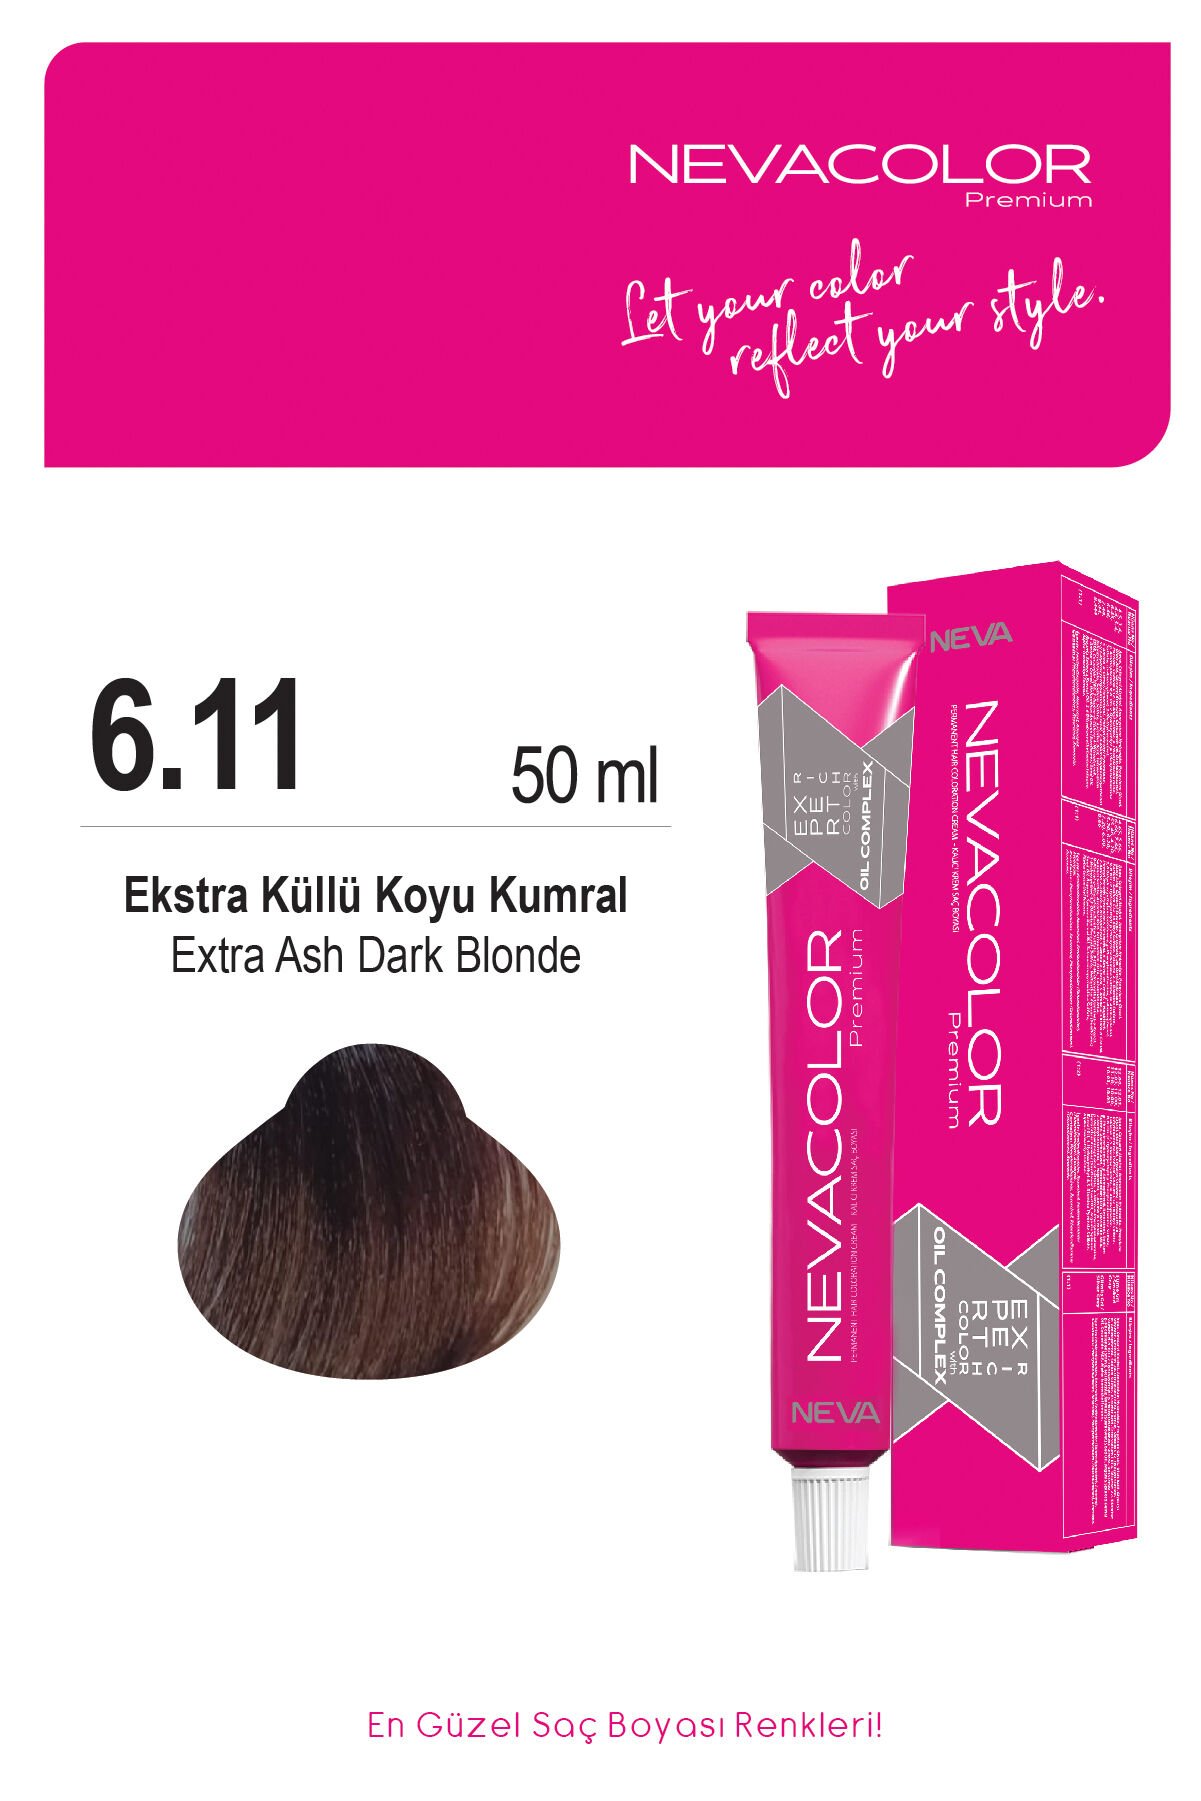 Nevacolor Premium 6.11 Ekstra Küllü Koyu Kumral - Kalıcı Krem Saç Boyası 50 g Tüp